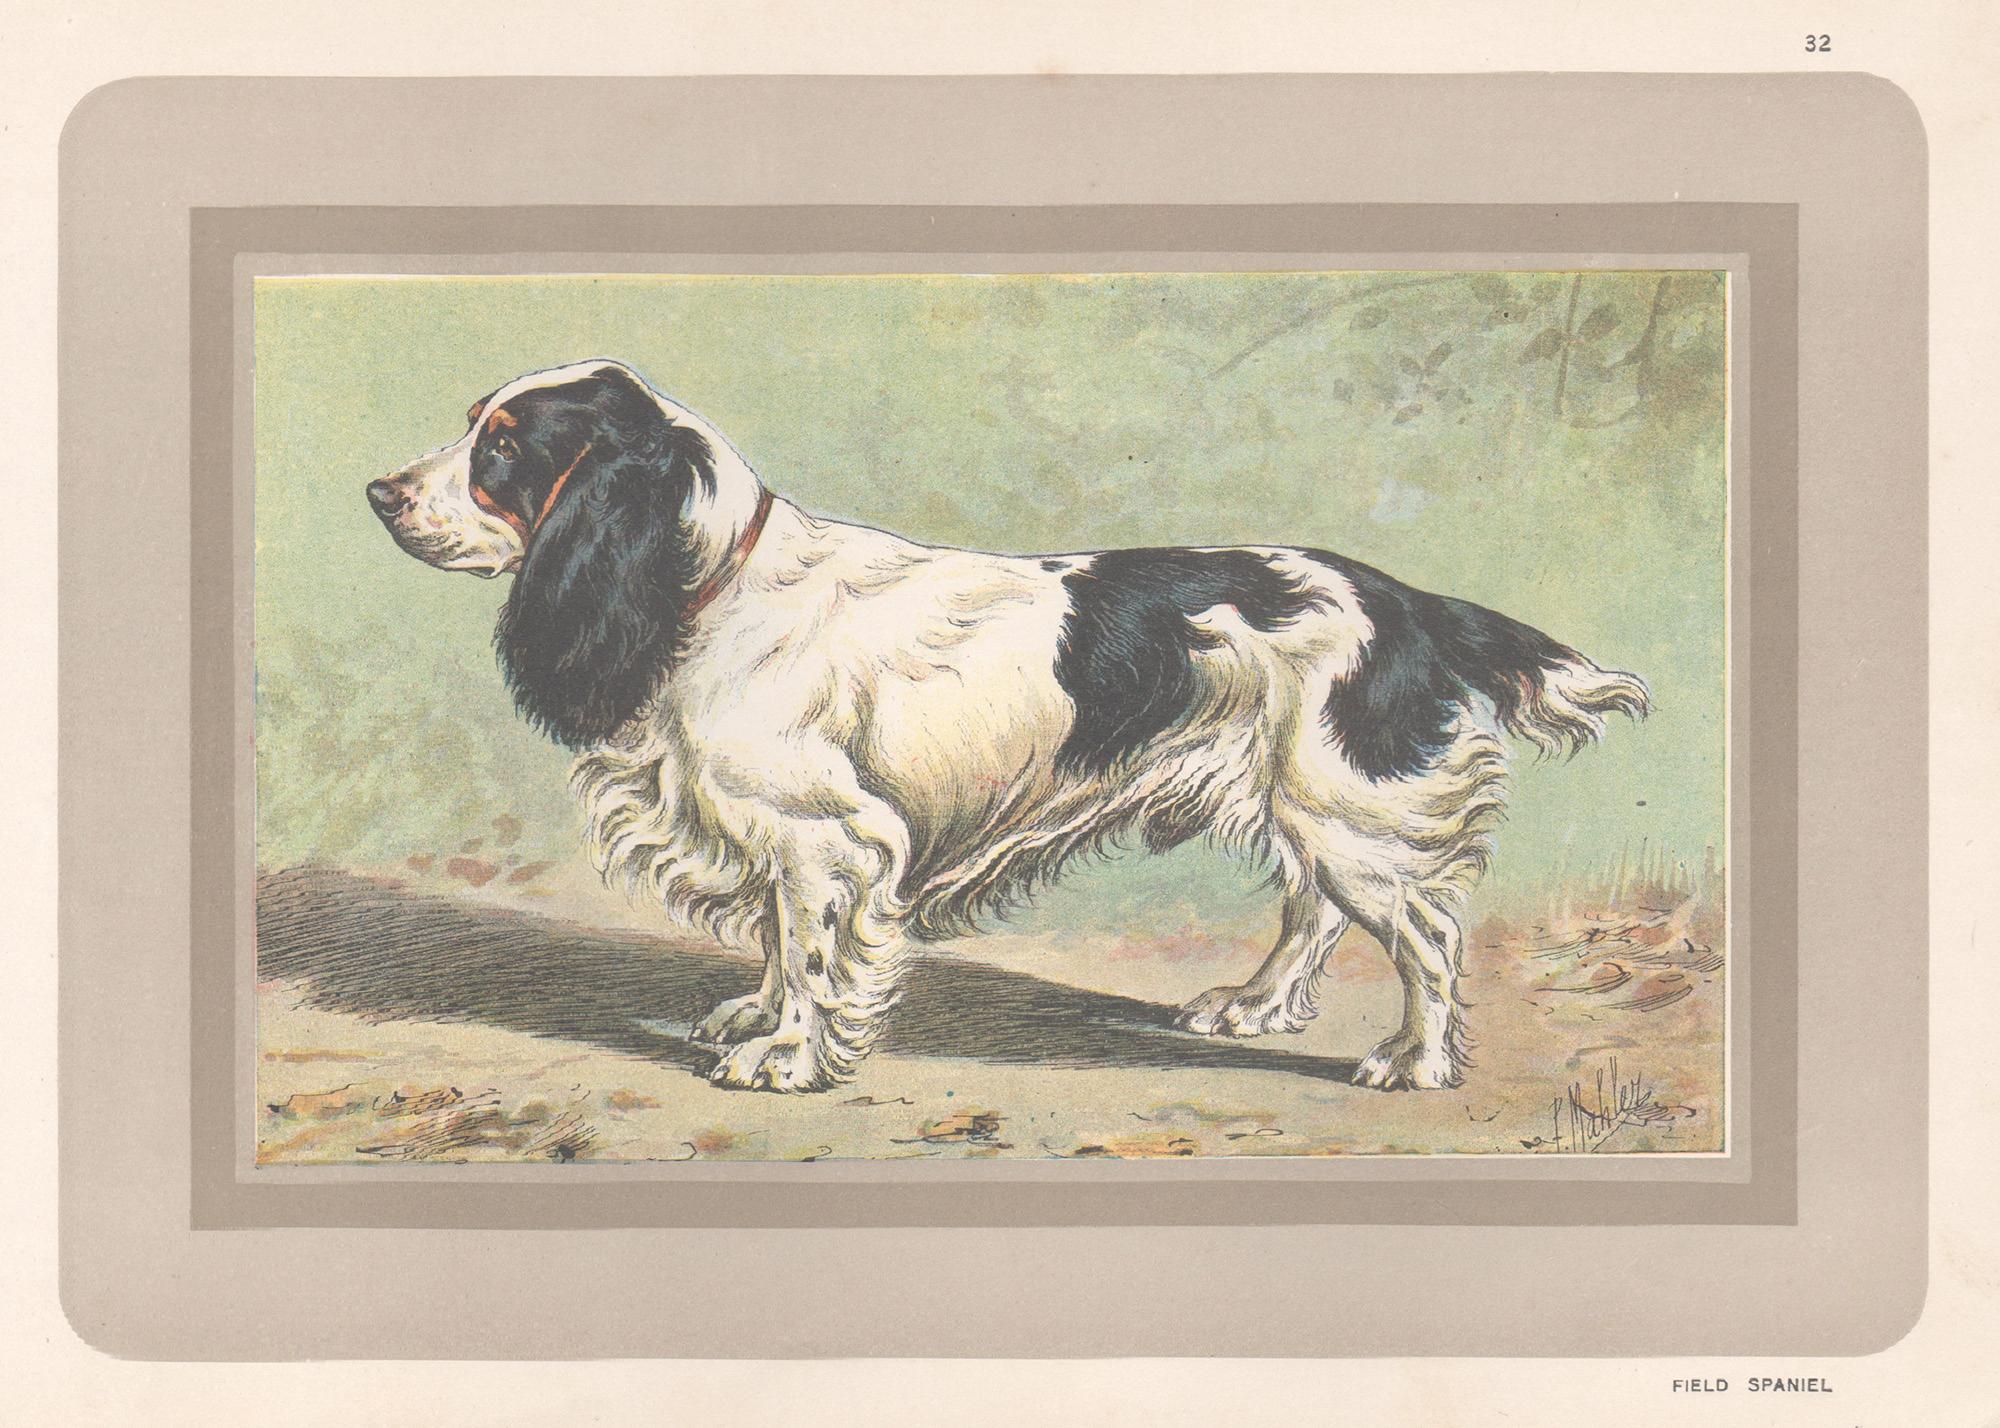 P. Mahler Animal Print – Field Spaniel, Französischer Chromolithographiedruck mit Hund, 1930er-Jahre